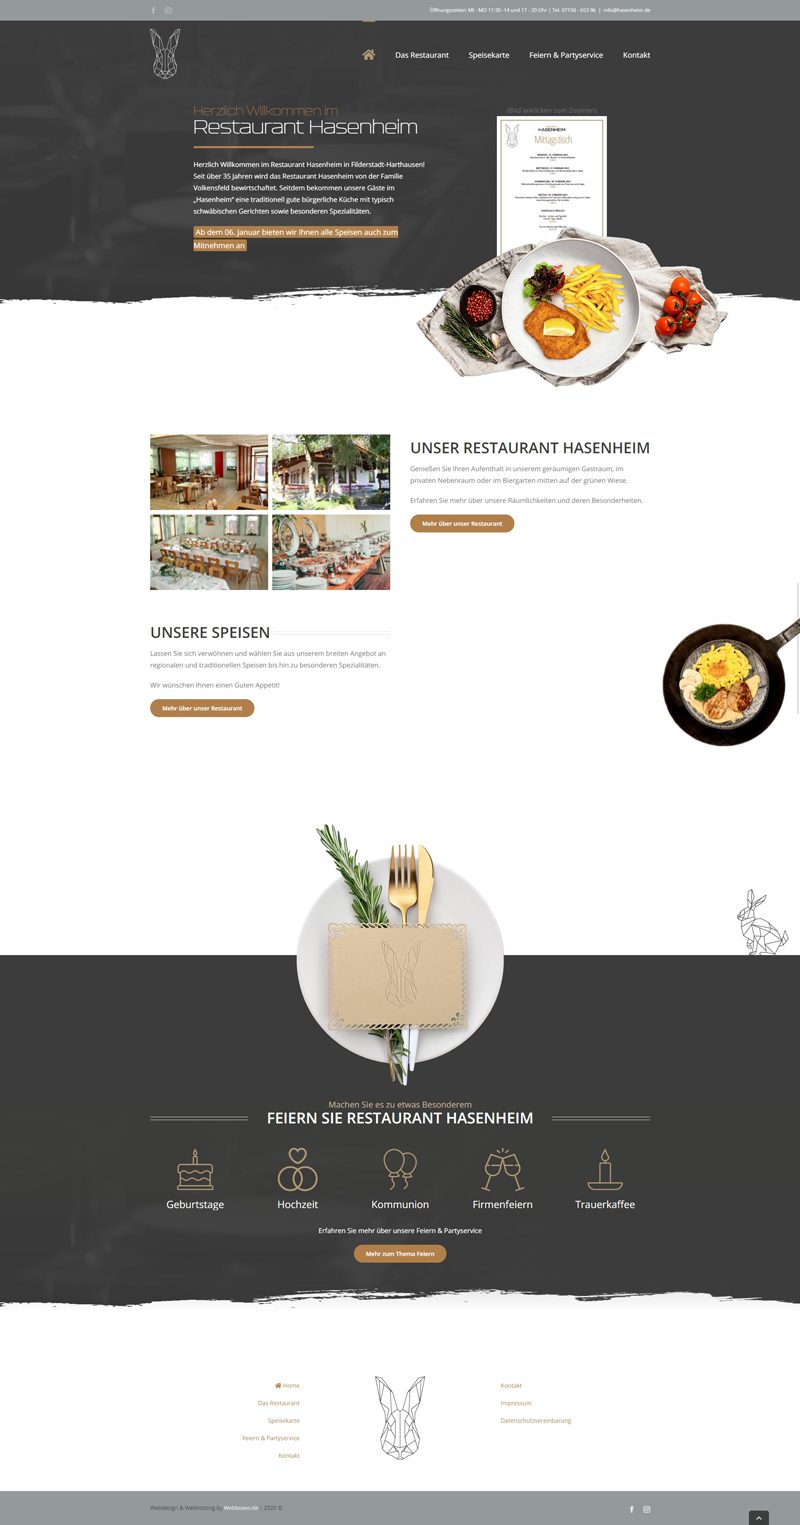 Startseite der Website des Restaurants Hasenheim